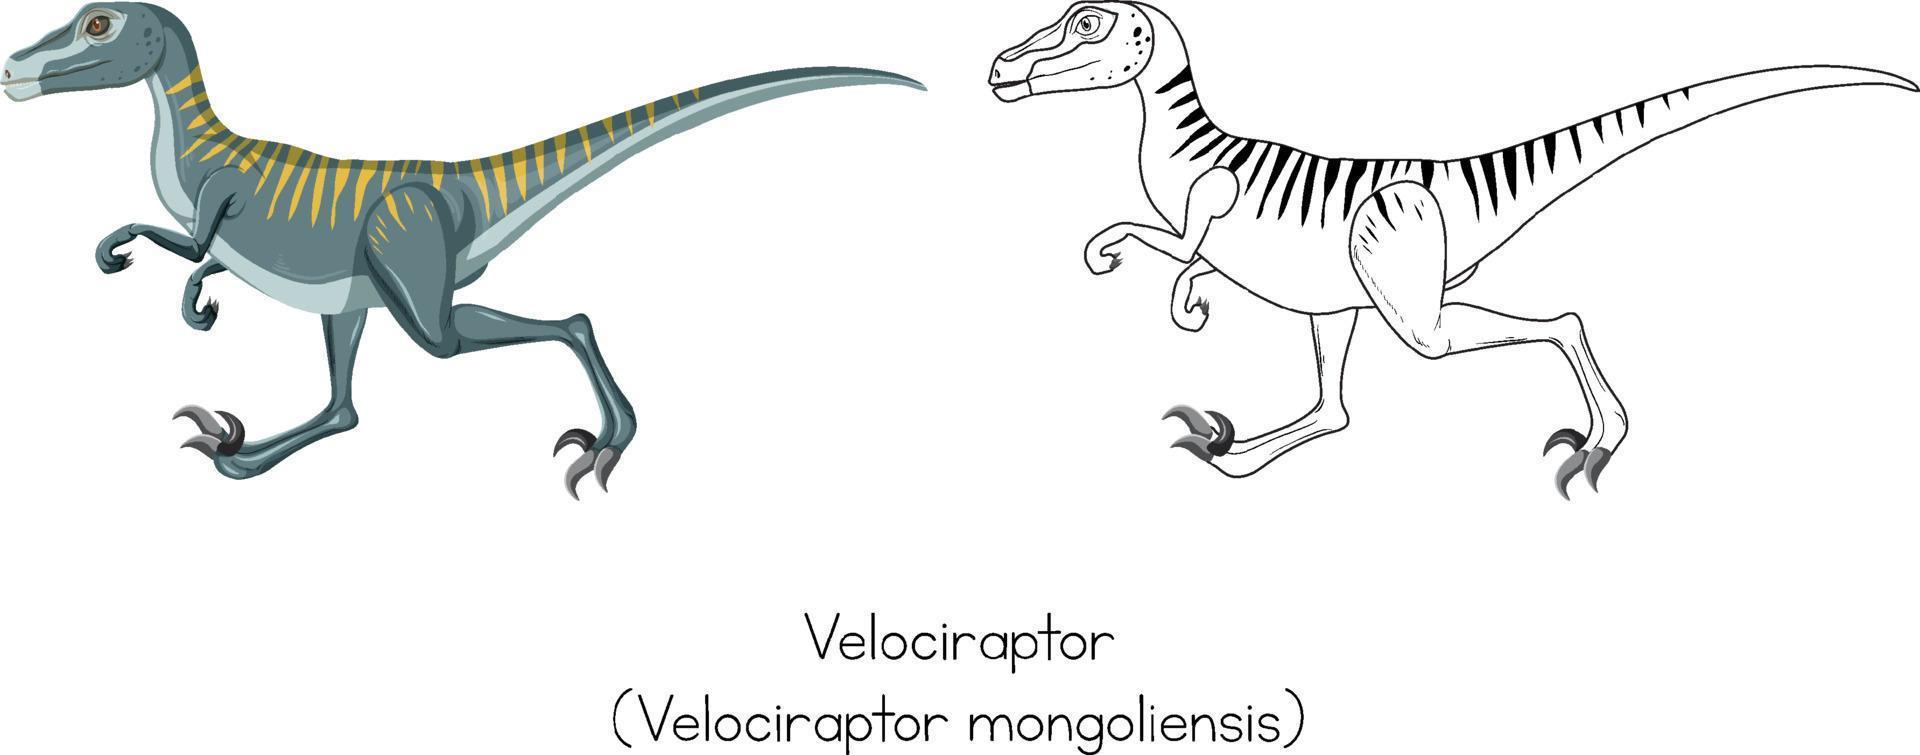 Dinosaurierskizzen von Velociraptor vektor